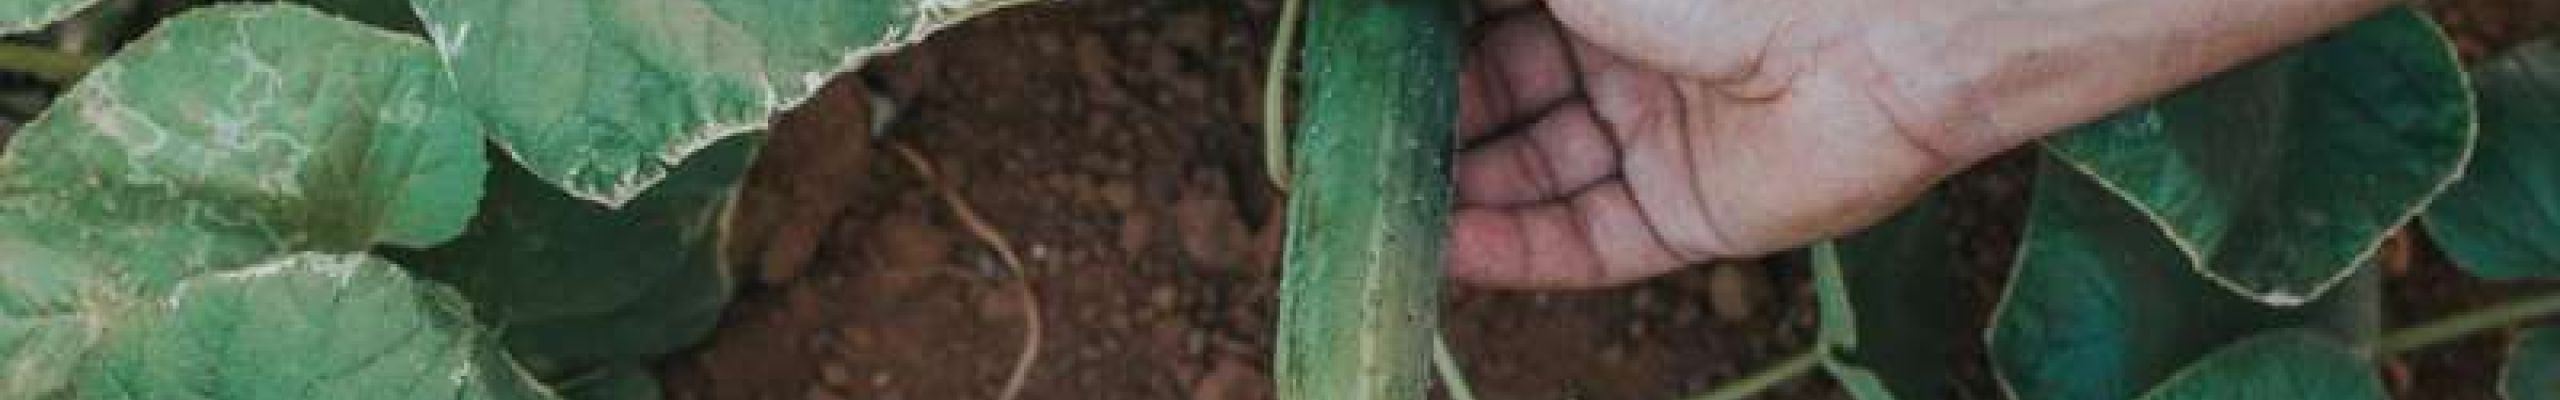 8 μυστικά για την καλλιέργεια του αγγουριού (+video)